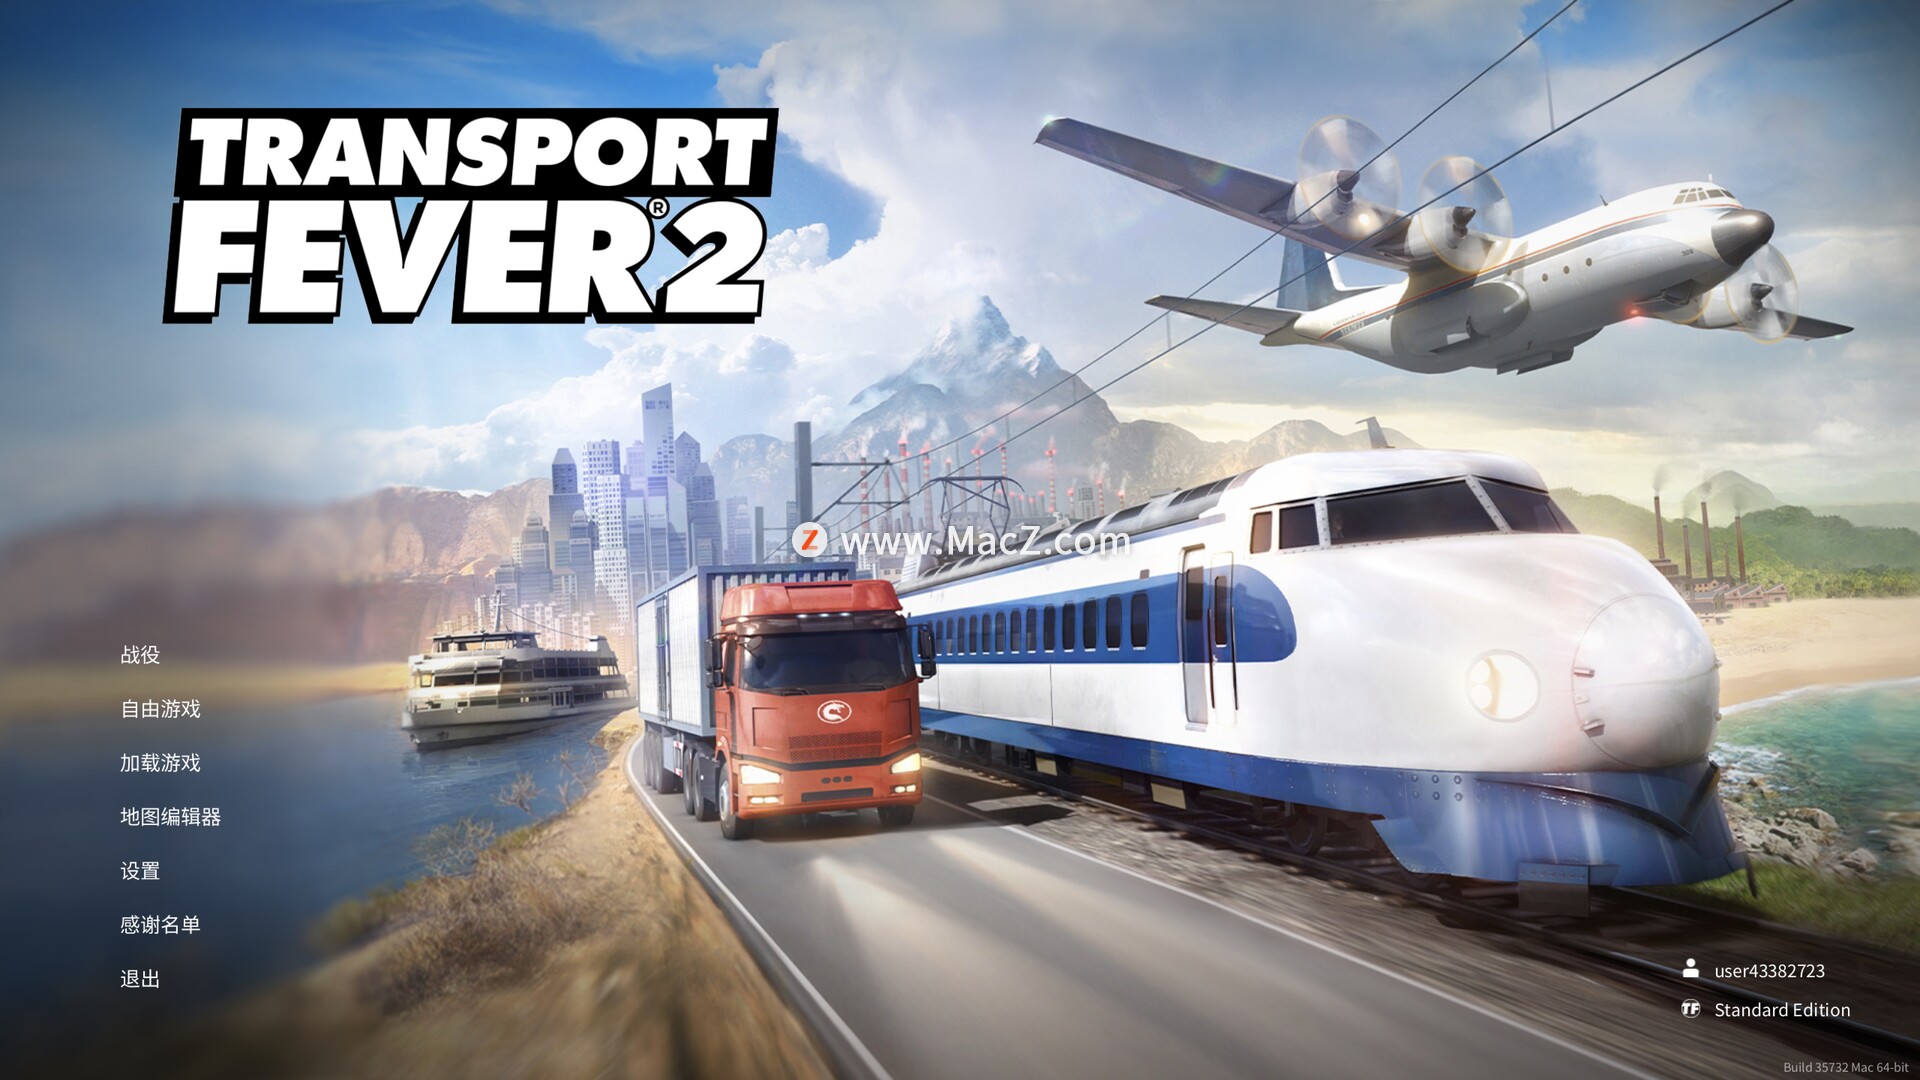 狂热运输2 transport fever 2 for Mac(交通运输模拟游戏)附dlc